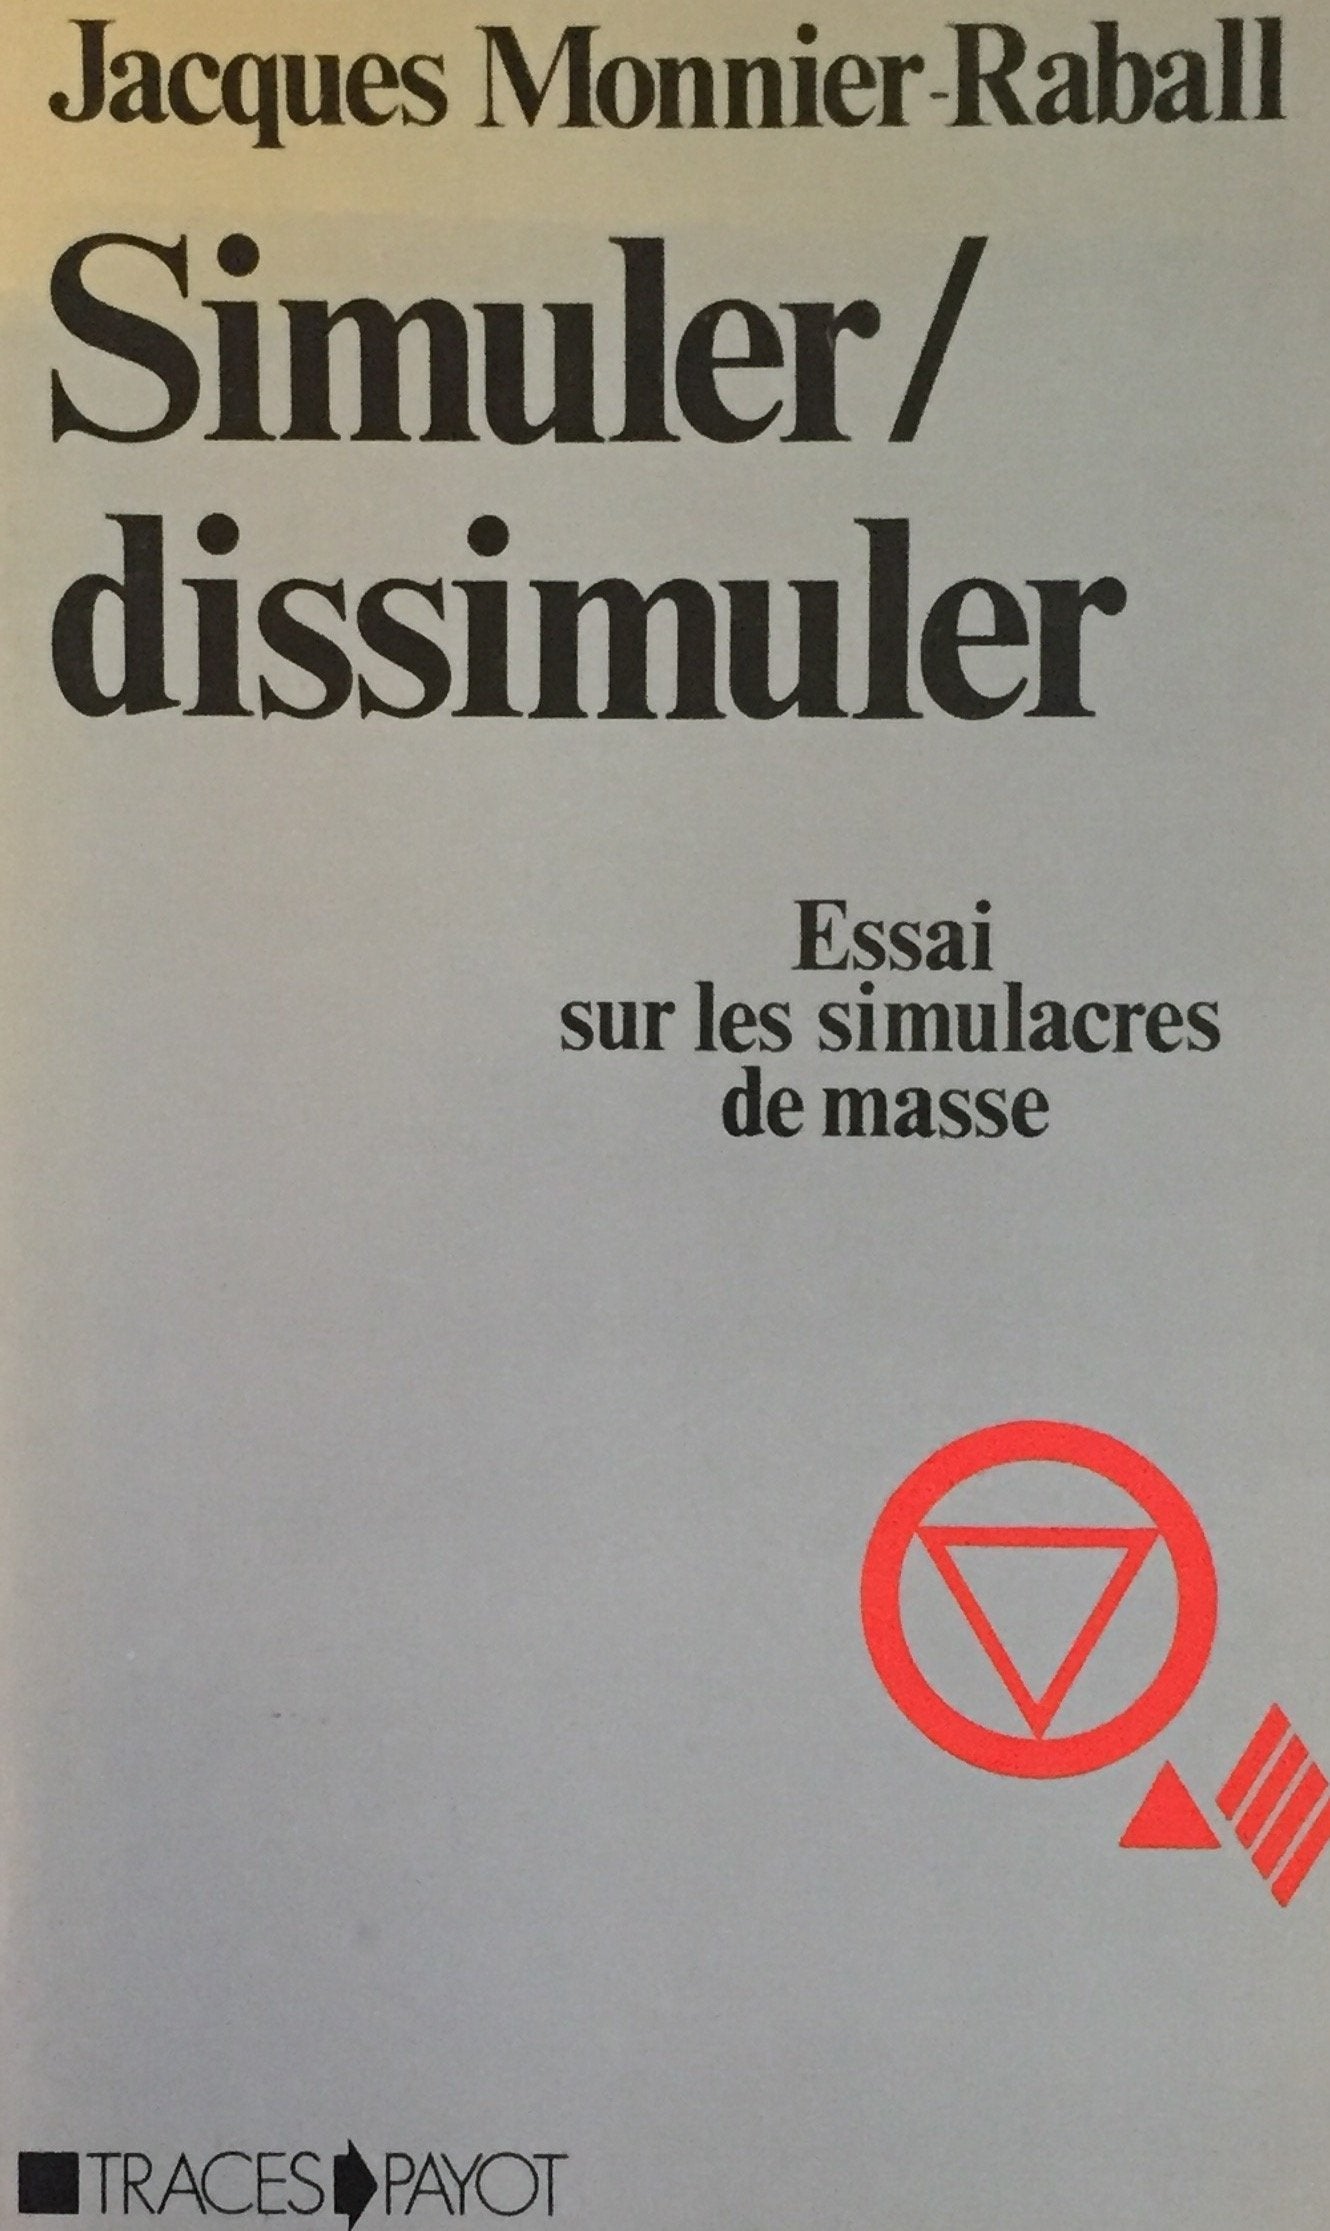 Livre ISBN 2228542105 Simuler - Dissimuler : Essai sur les simulacres de masse (Jacques Monnier-Raball)